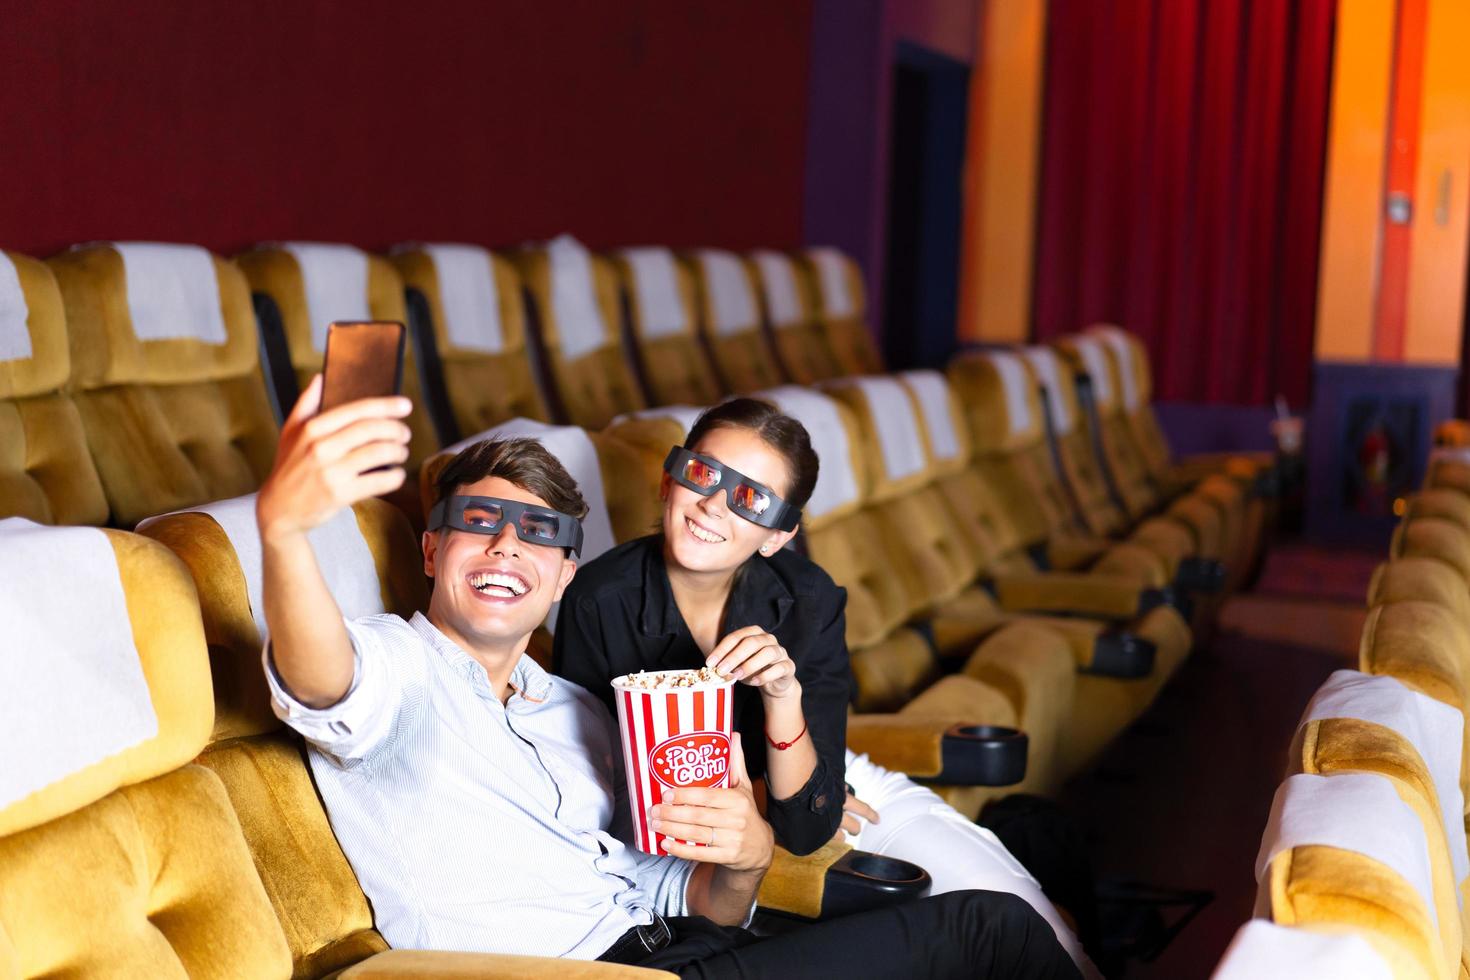 blanke man en vrouw nemen een selfie in de bioscoop. foto